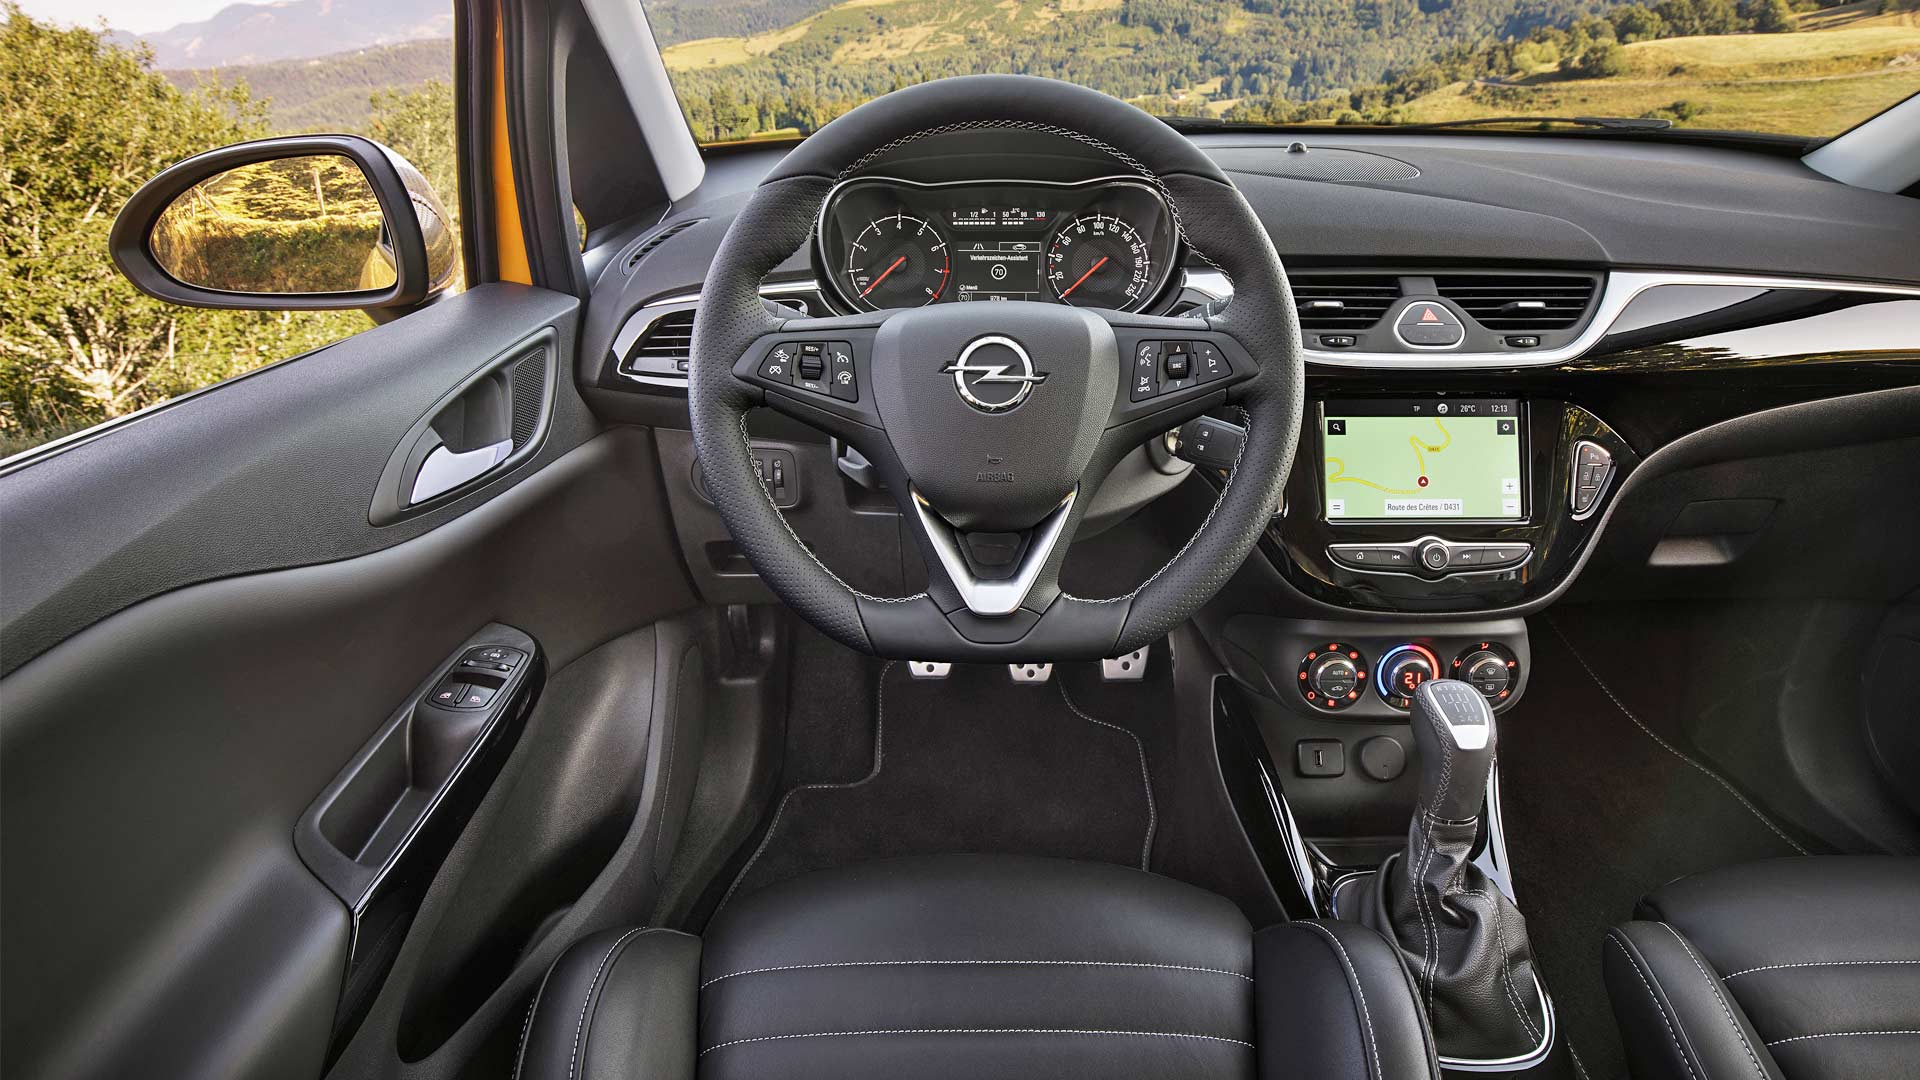 http://www.autodevot.com/wp-content/uploads/2018/09/2018-Opel-Corsa-GSi-interior.jpg